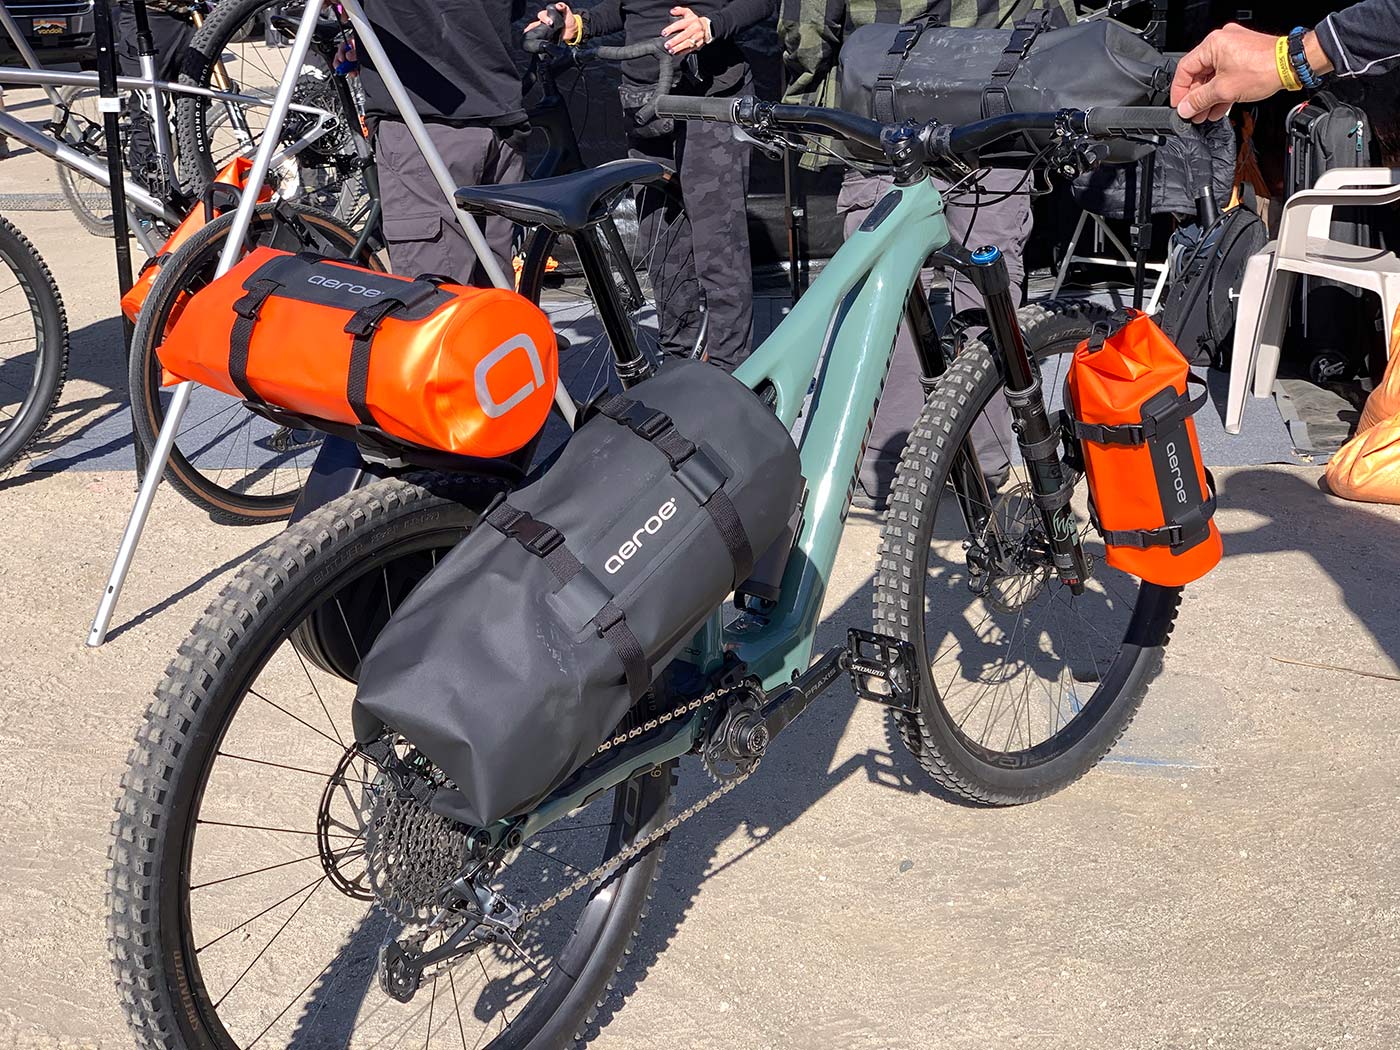 aeroe waterproof bikepacking frame bags and pannier bags with aerodynamic design